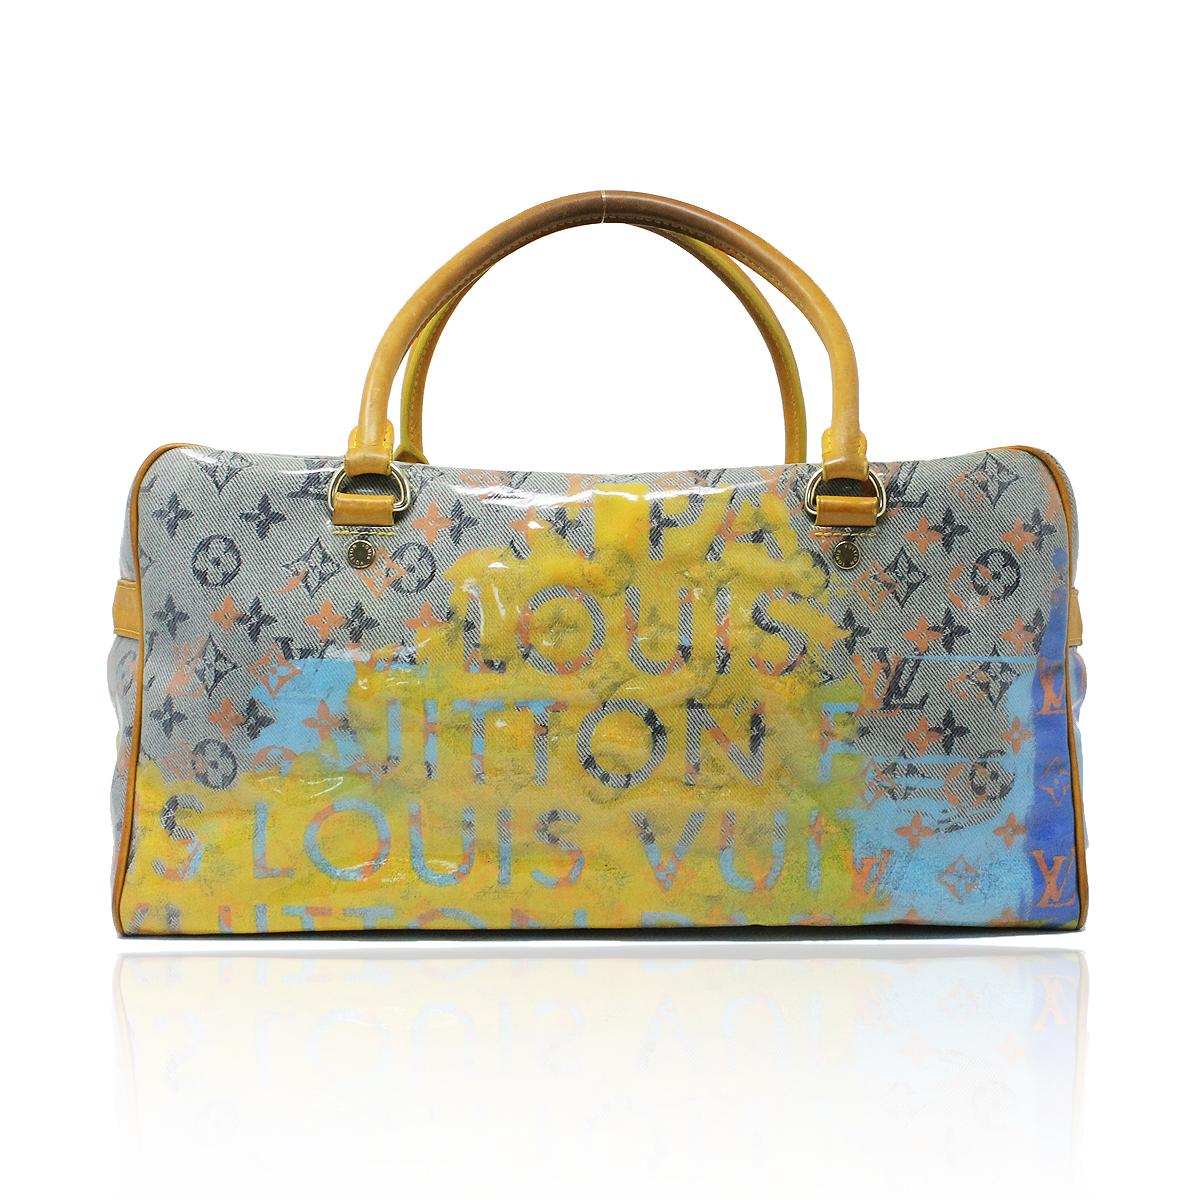 Women's Louis Vuitton Richard Prince Jaune Weekender Bag